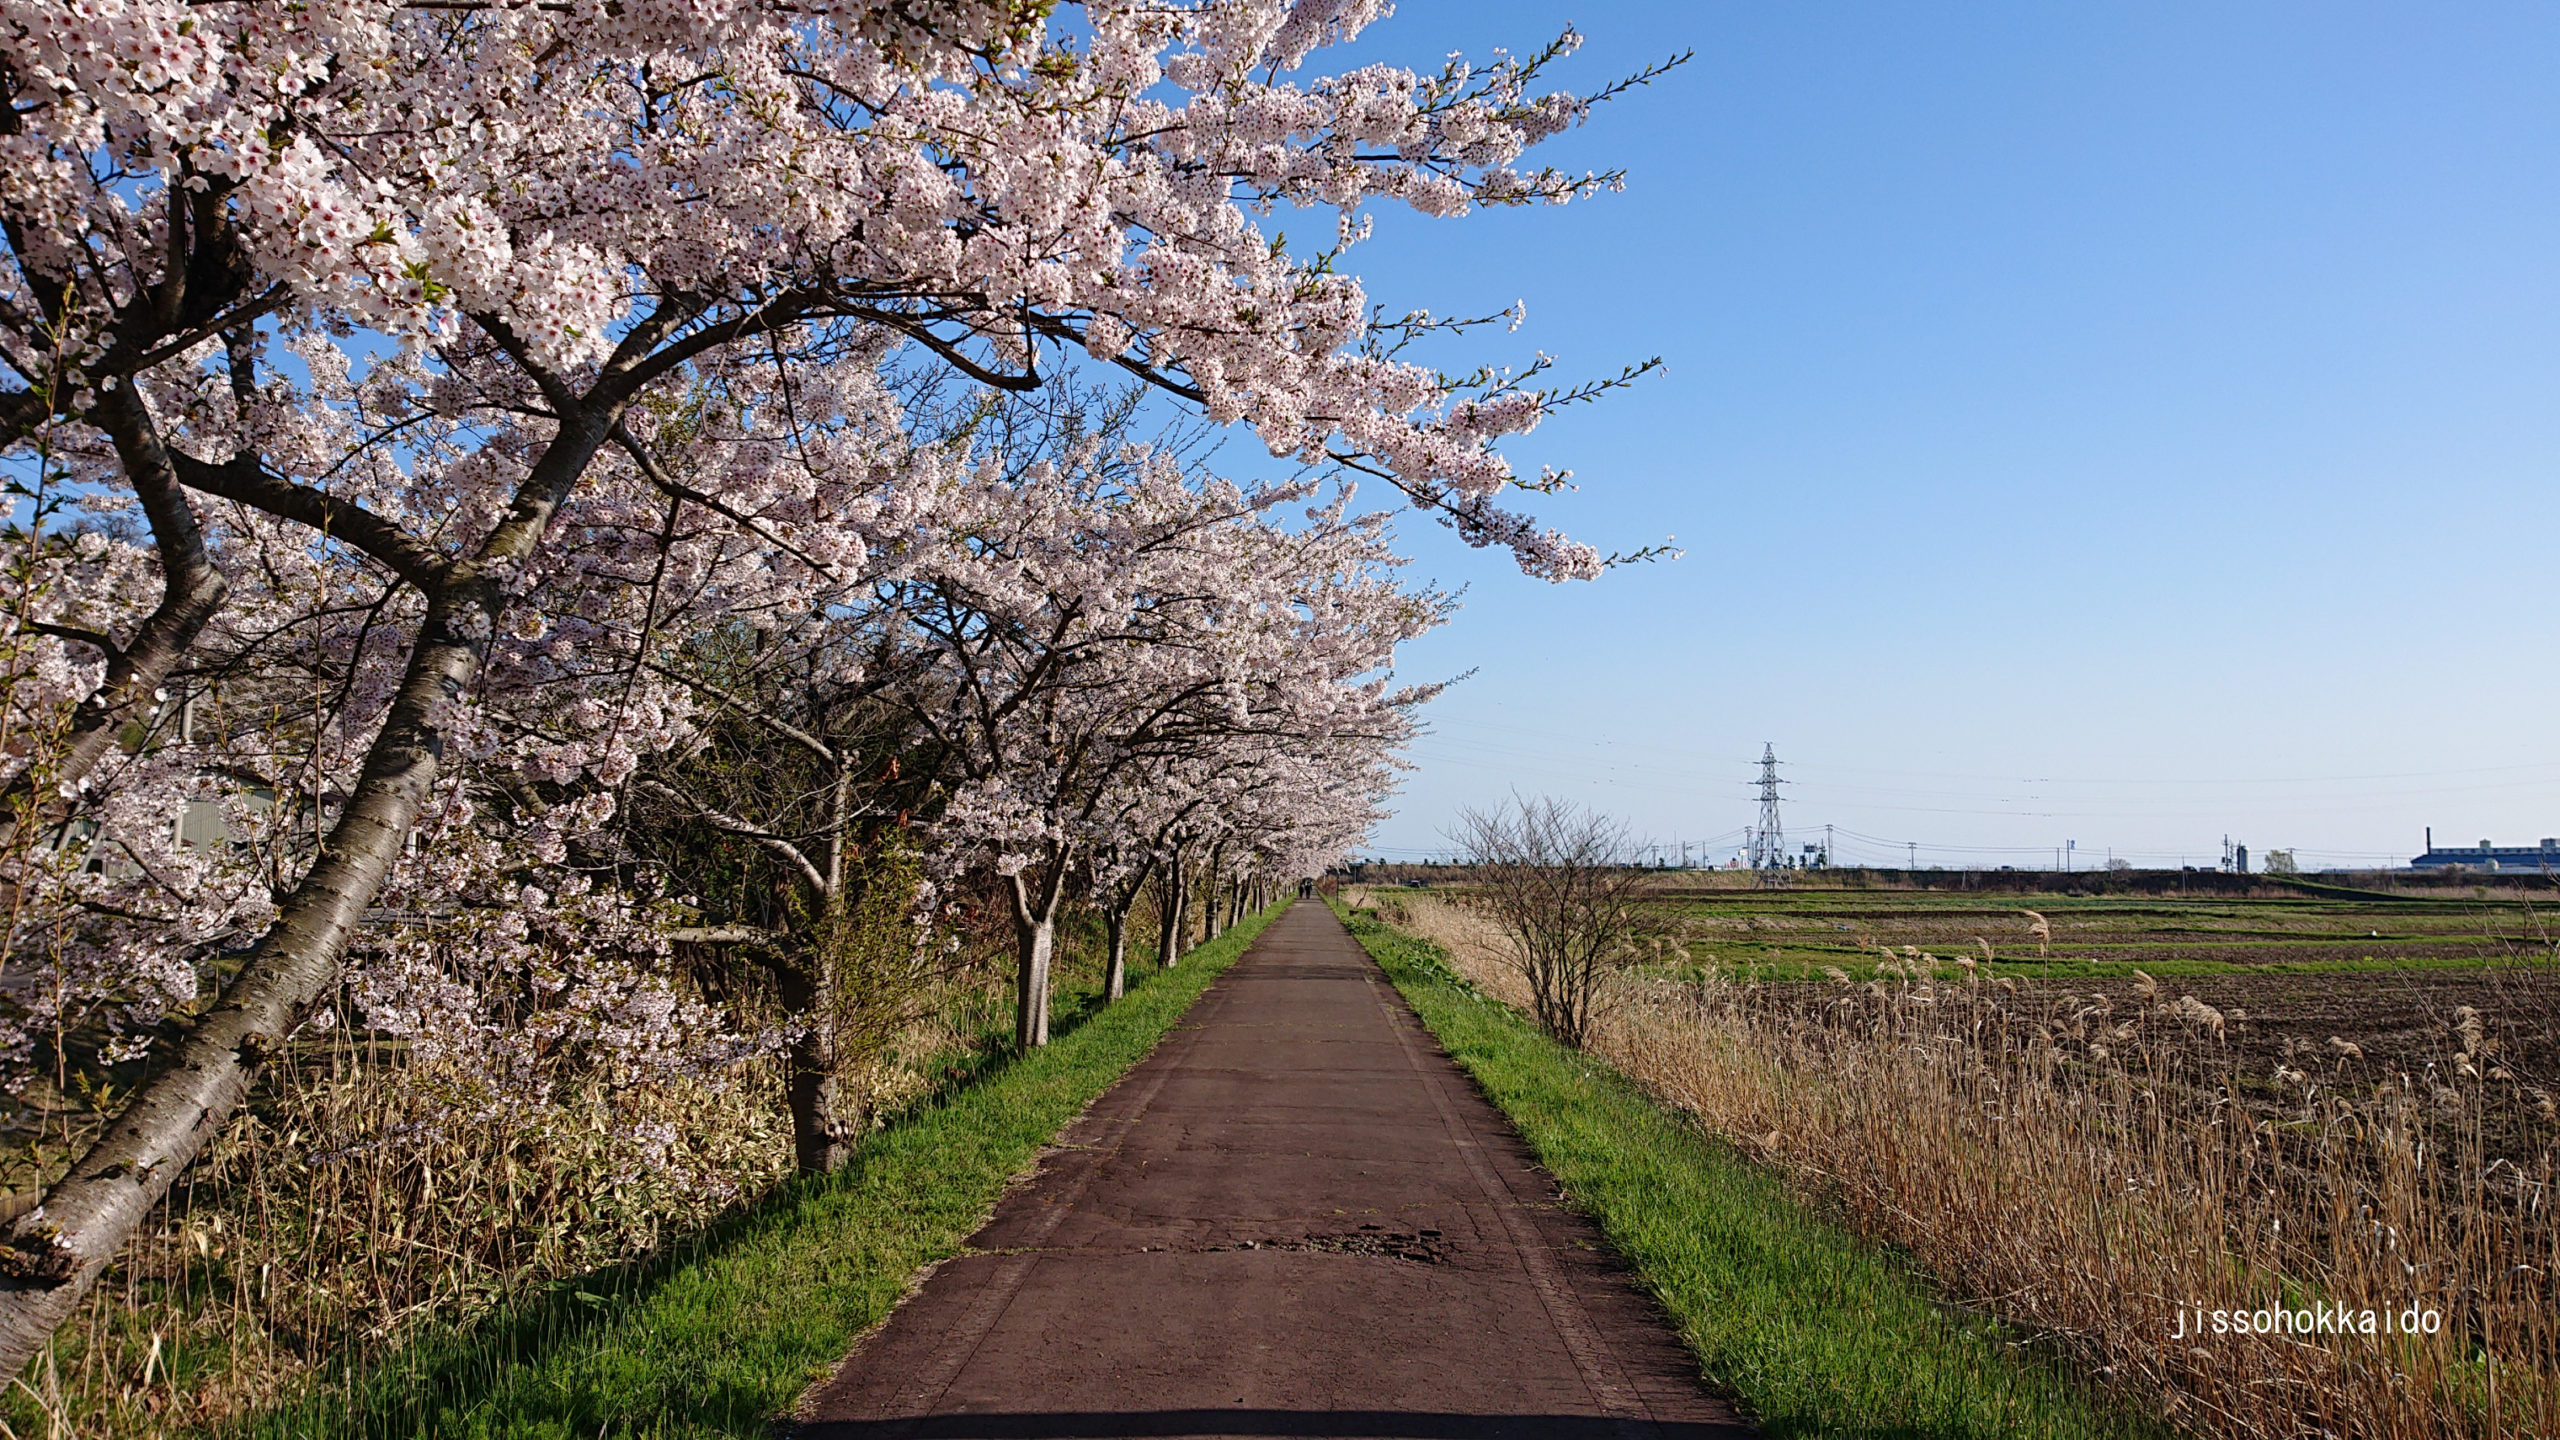 伊達温泉の桜並木 北海道では珍しいソメイヨシノの桜並木 実走北海道2nd